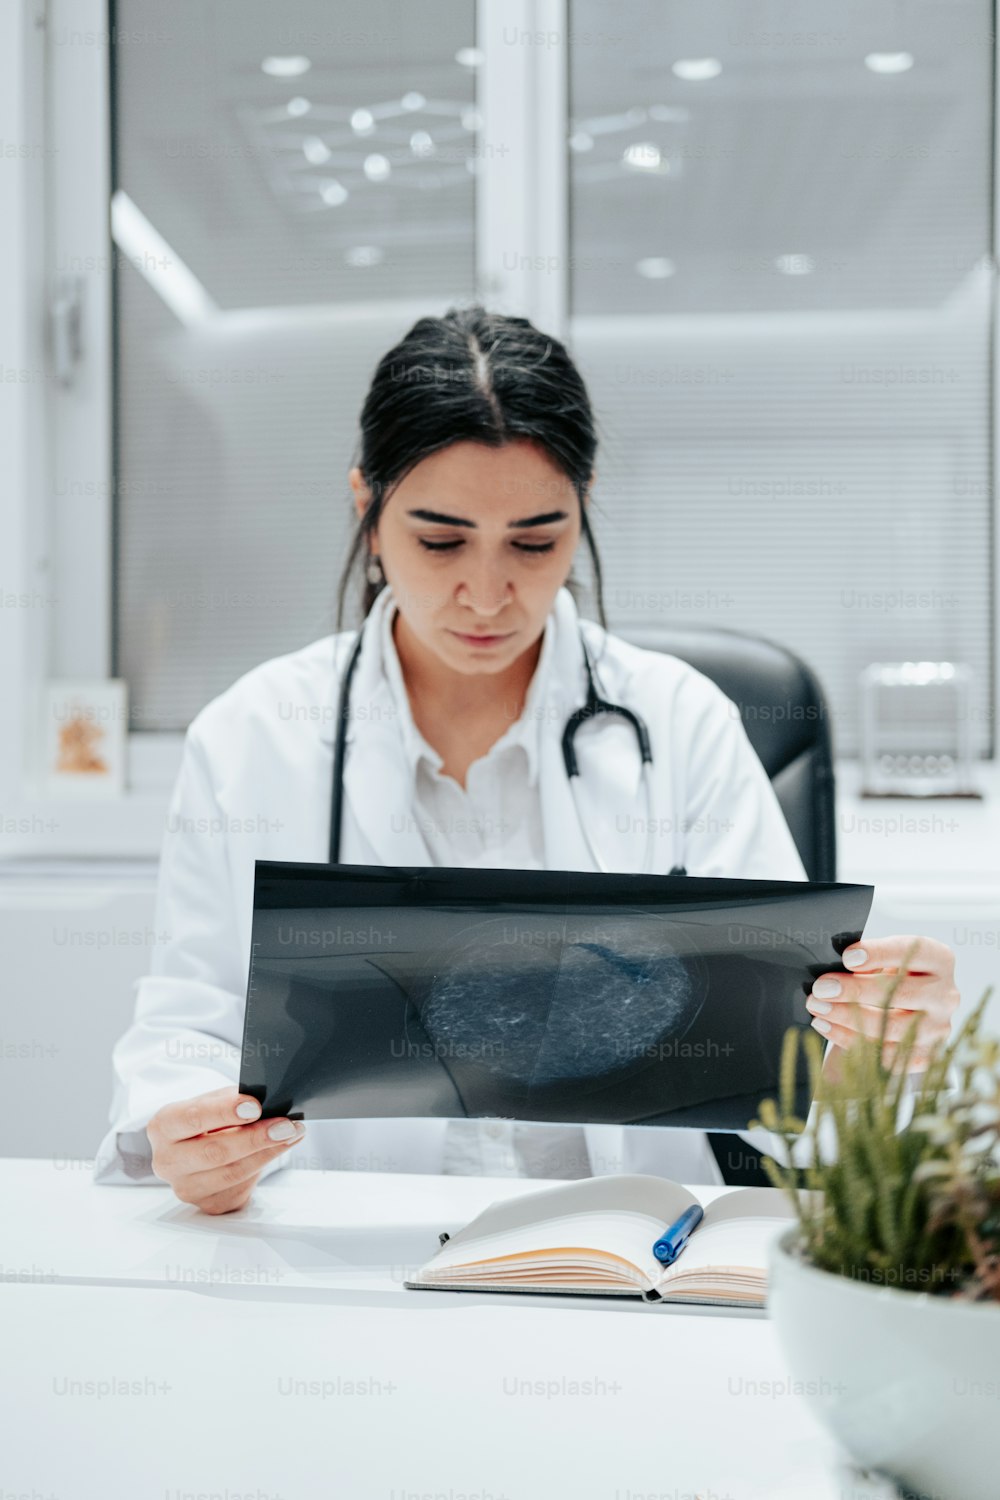 Eine Ärztin betrachtet einen Scan auf einem Tablet